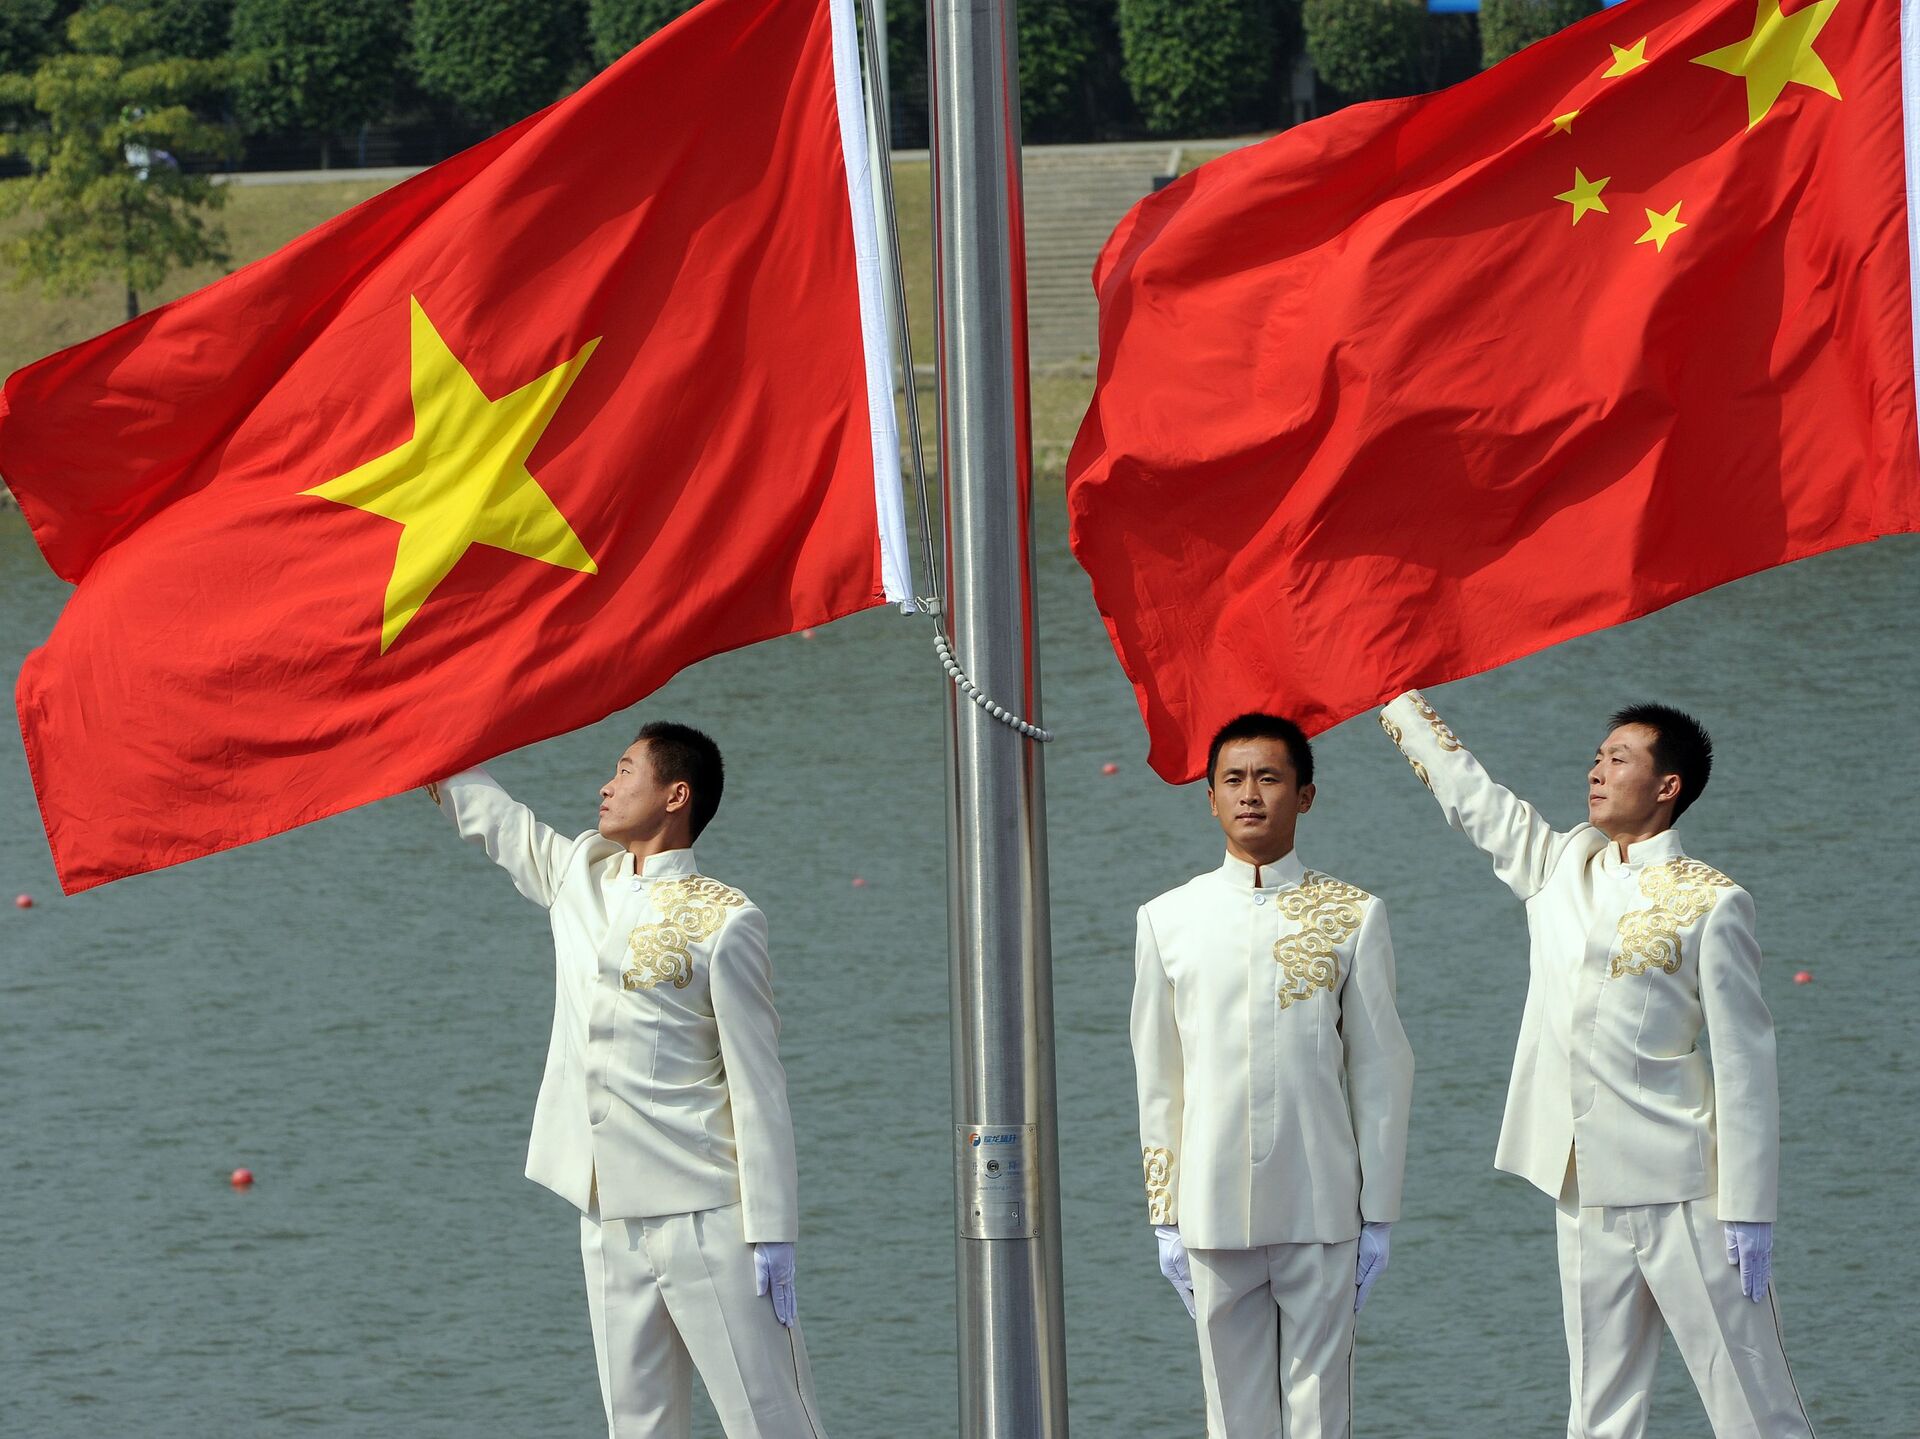 Hình ảnh cờ quốc kỳ của Việt Nam và Trung Quốc sẽ được liên kết với tình hữu nghị và sự đoàn kết giữa hai dân tộc trong việc xây dựng một tương lai tốt đẹp cho cả hai nước. Nhìn vào hình ảnh này, người ta sẽ thấy được tình cảm thân thiết và sự tôn trọng giữa các quốc gia trong khu vực.